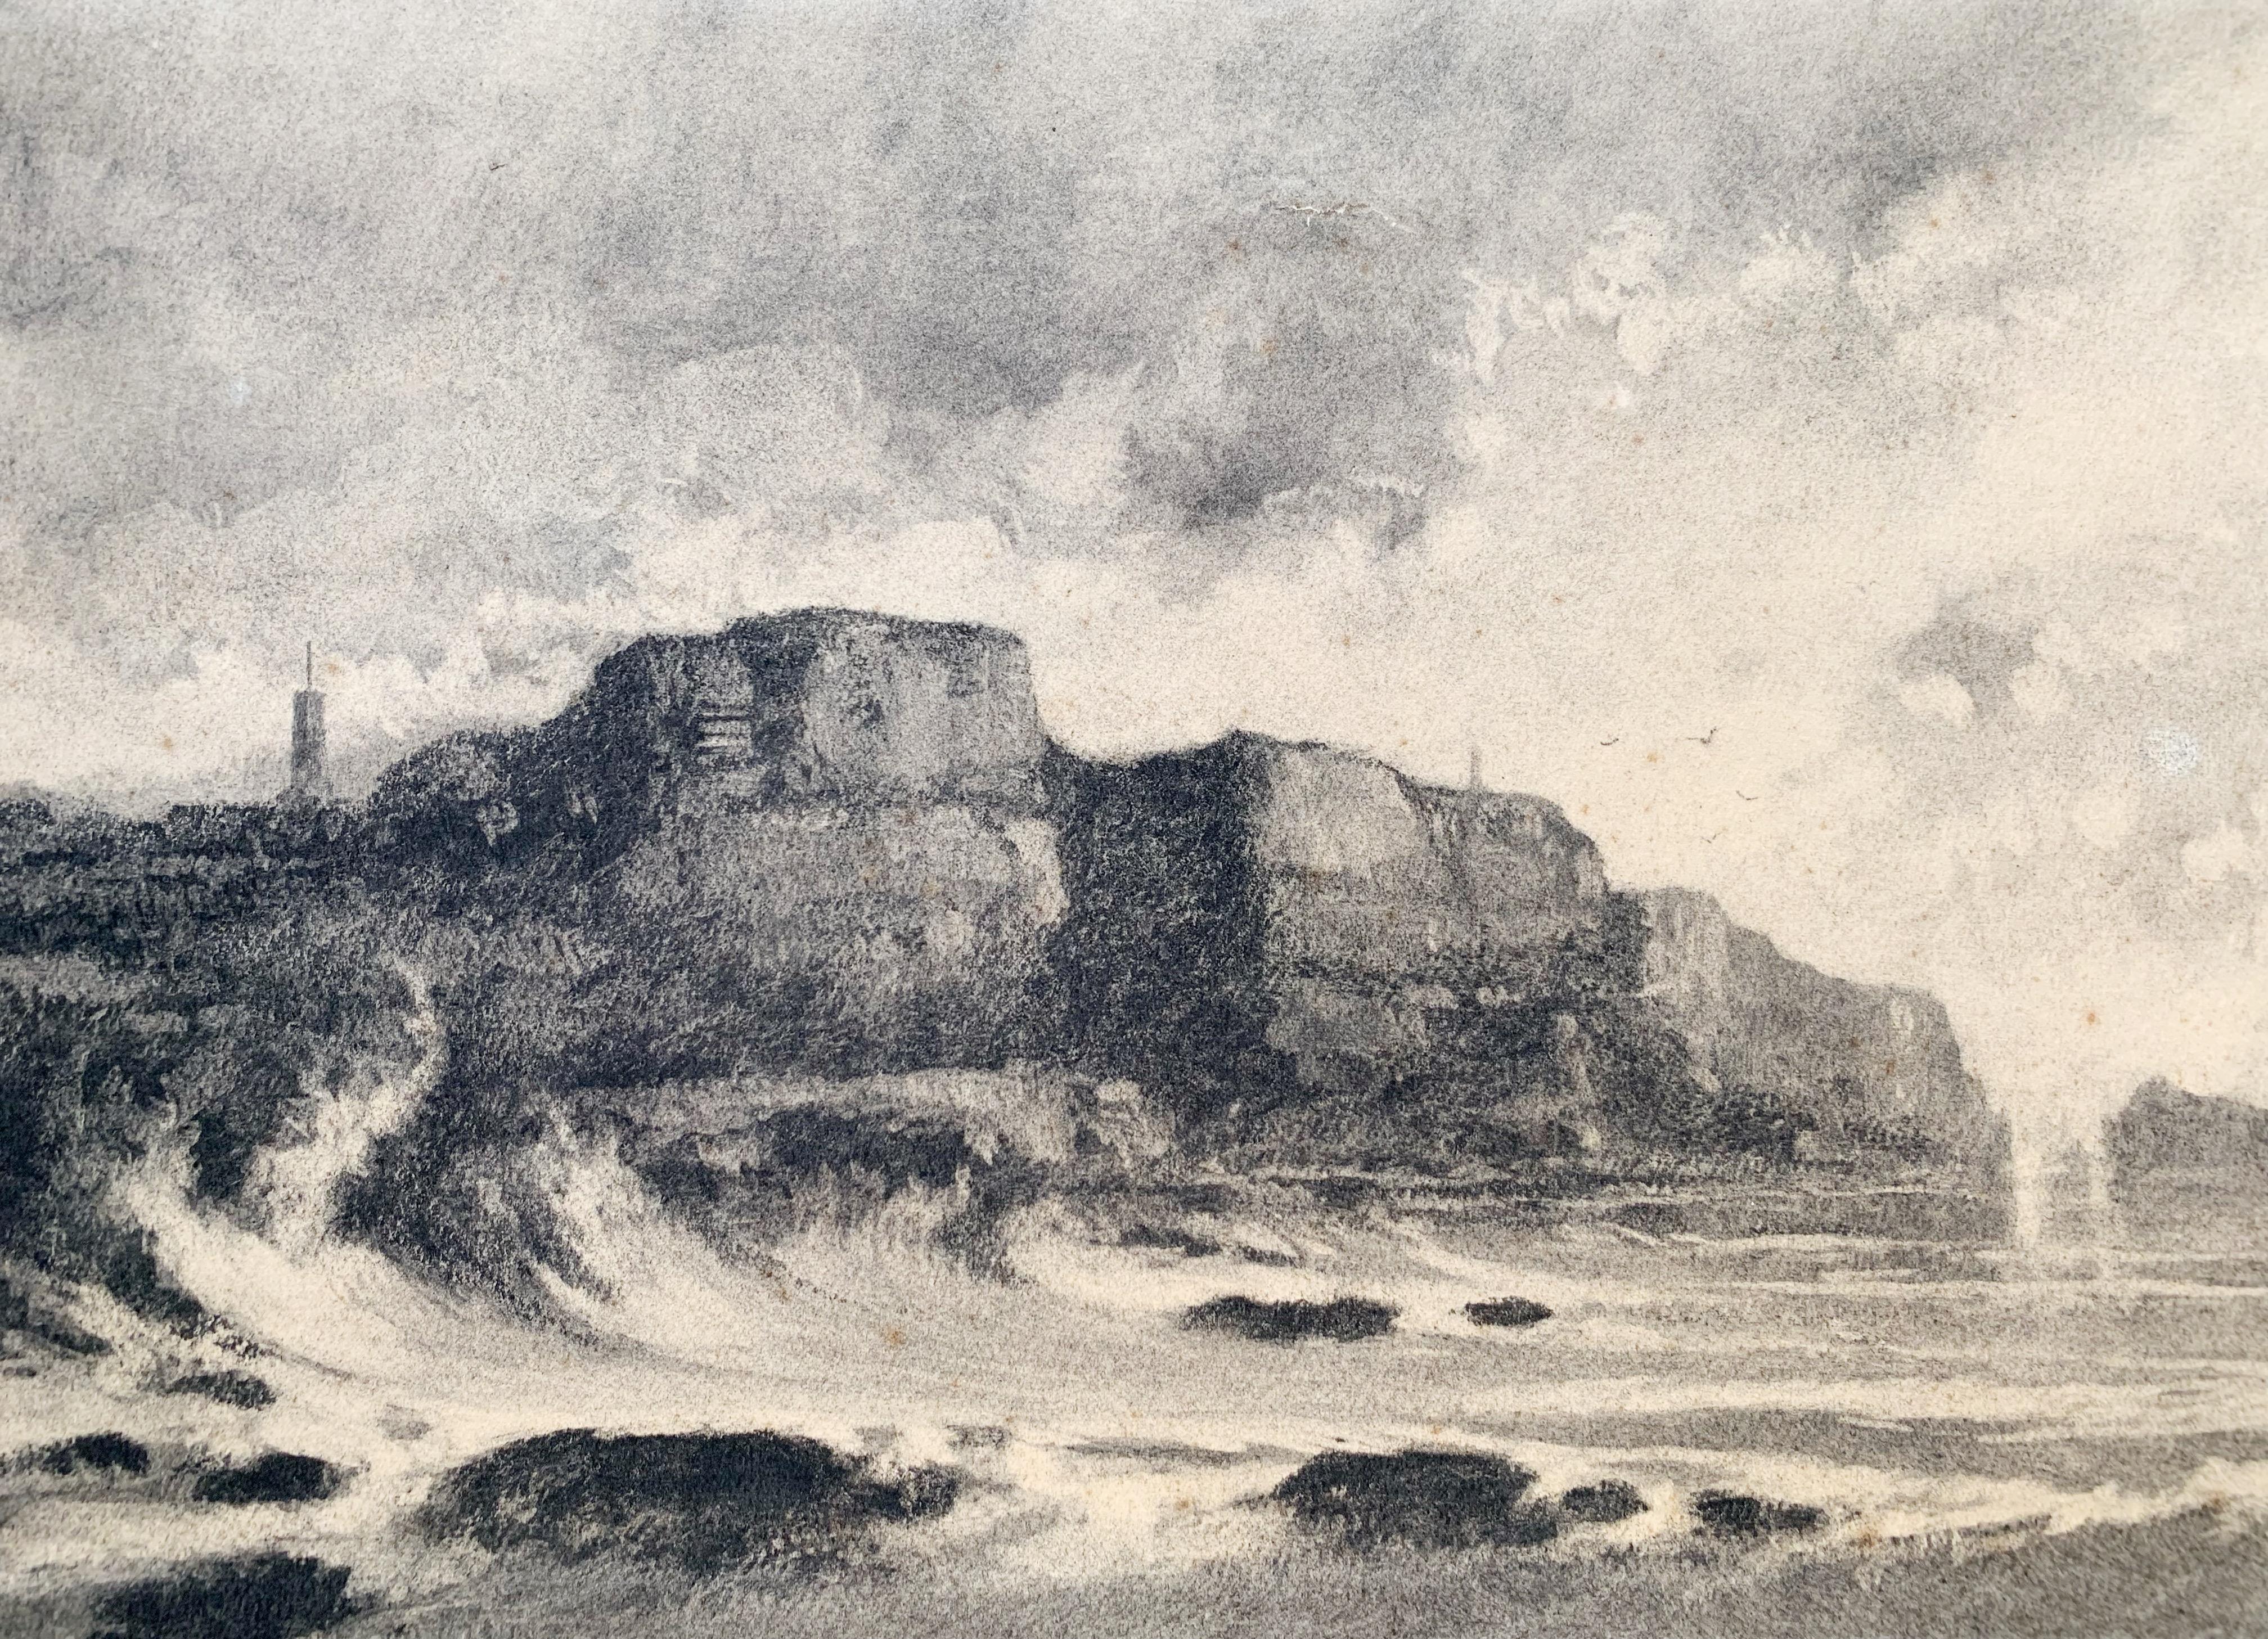 Frank Charles Peyraud (1858-1948)
Küstenlandschaft, 1882
Zeichenkohle und Schattierung auf Papier
Signiert 